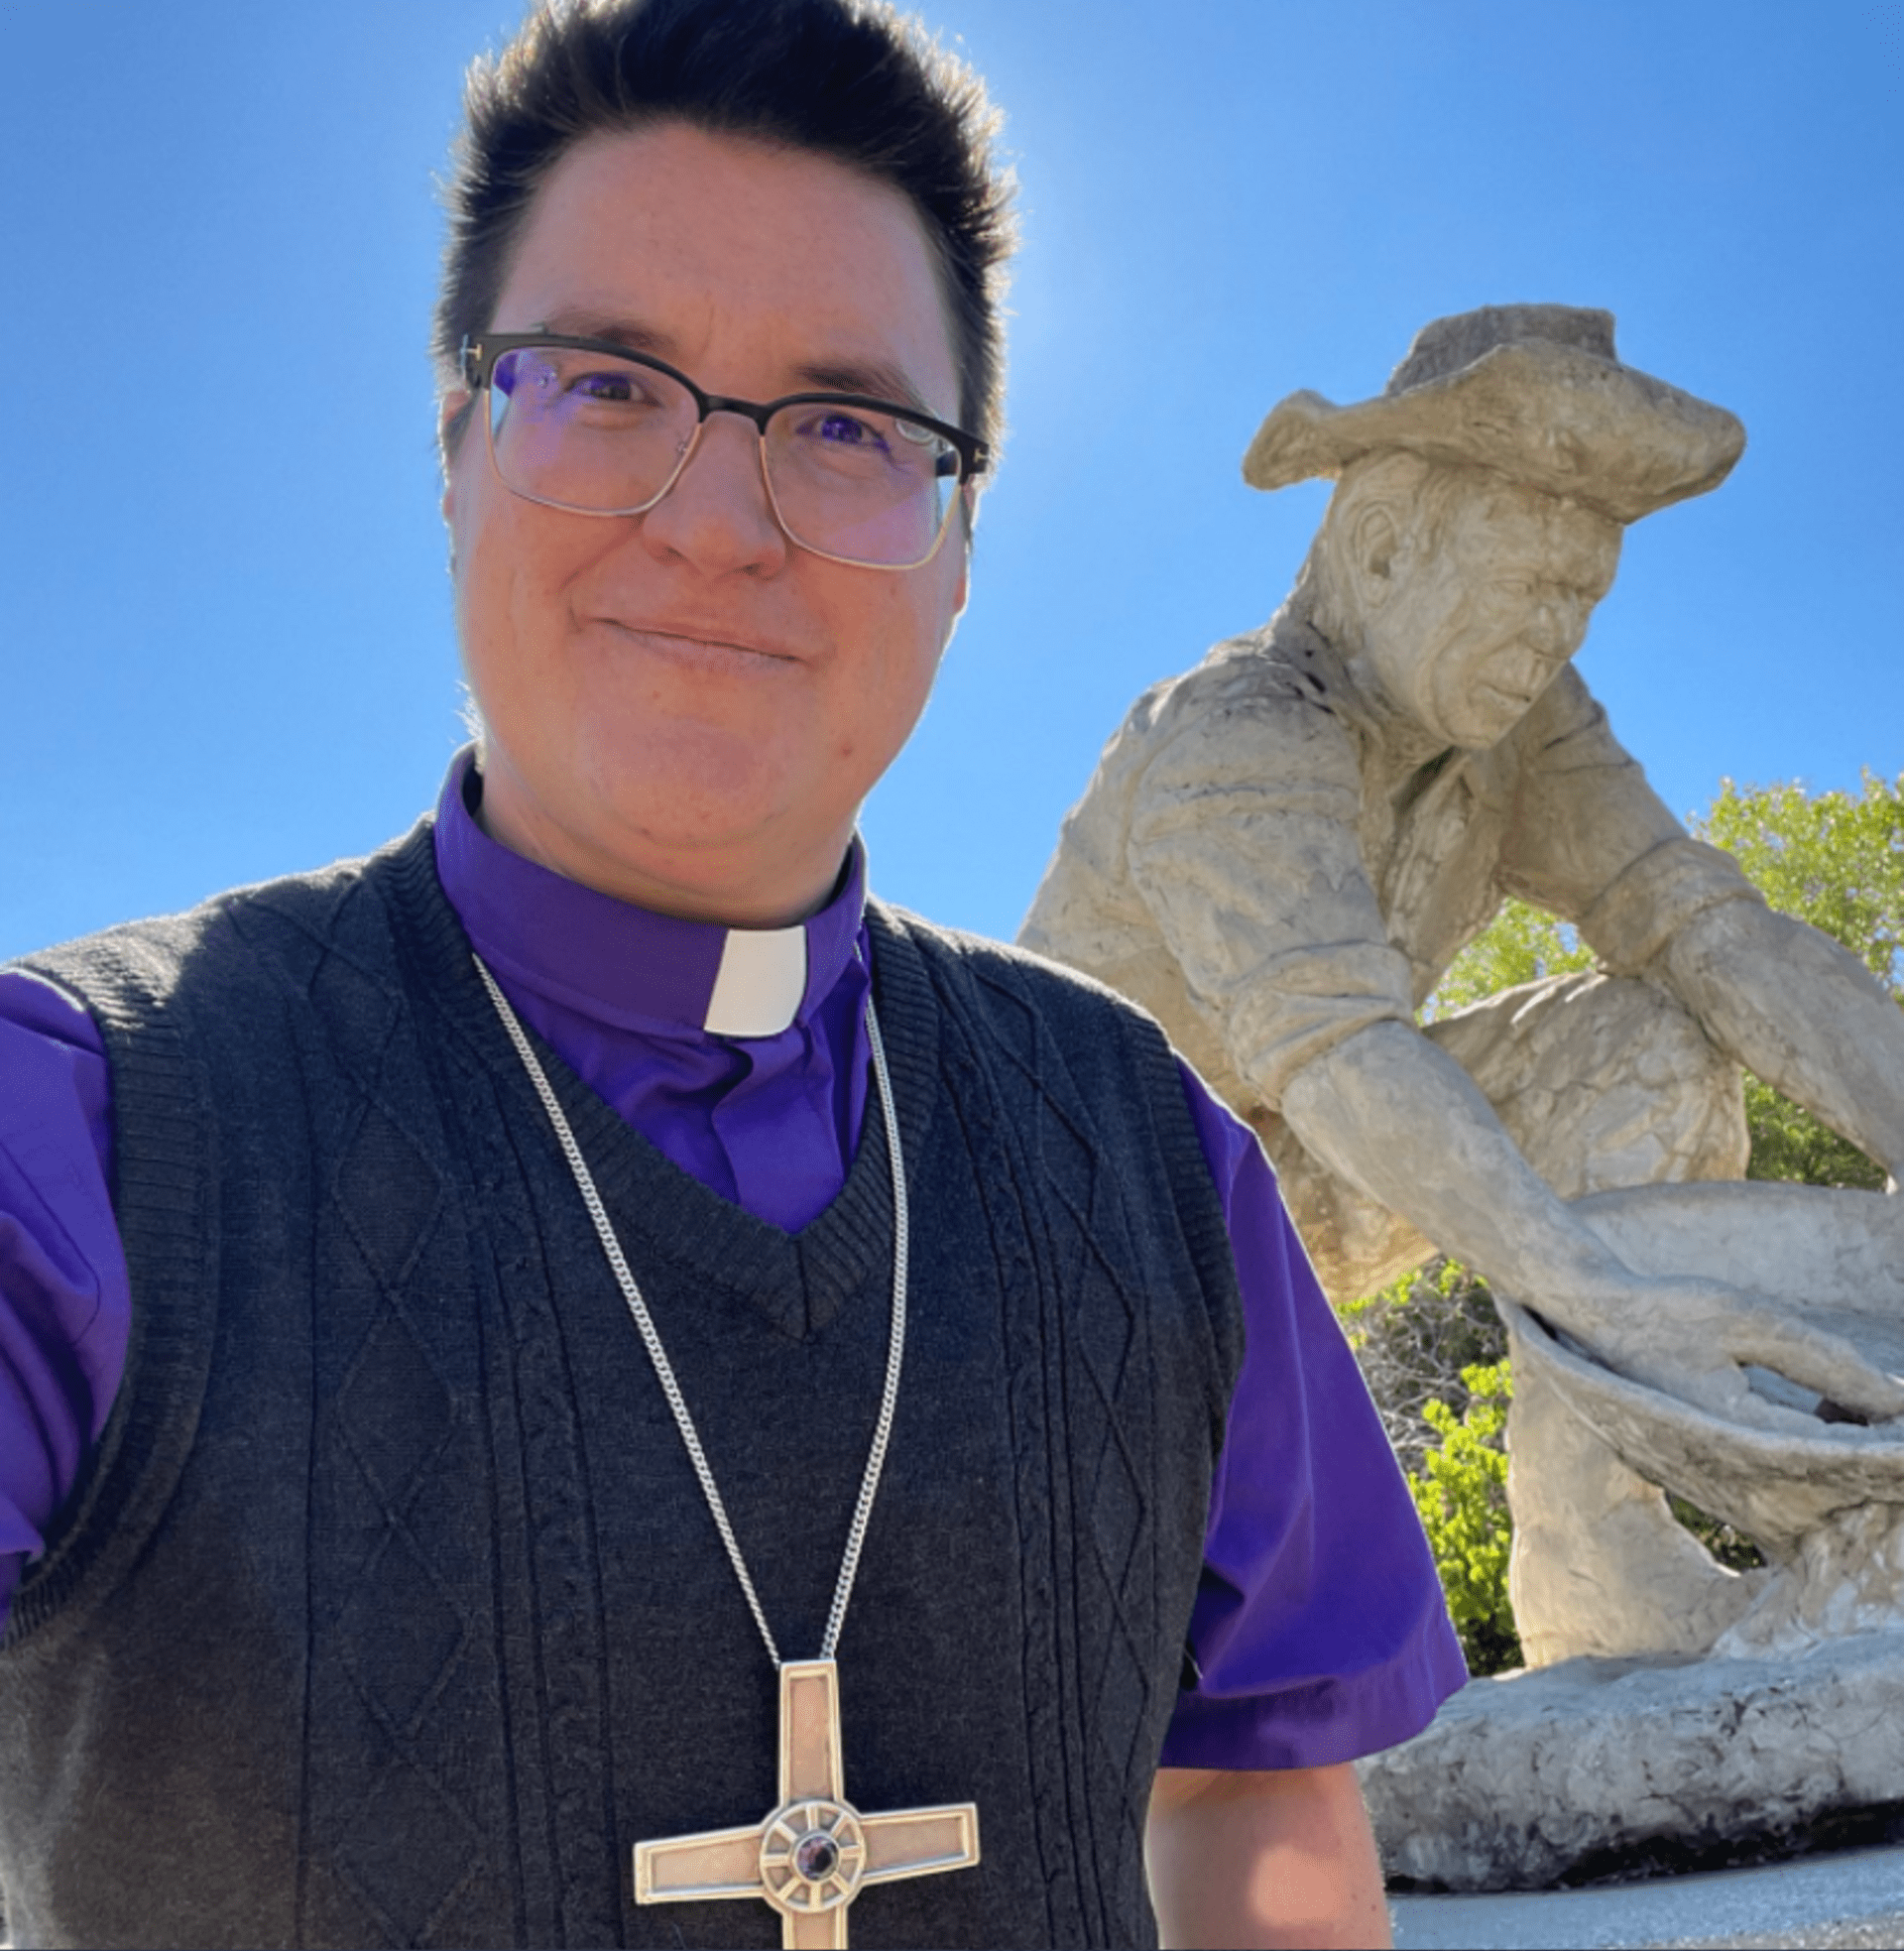 Megan Rohrer je první transgender biskupka